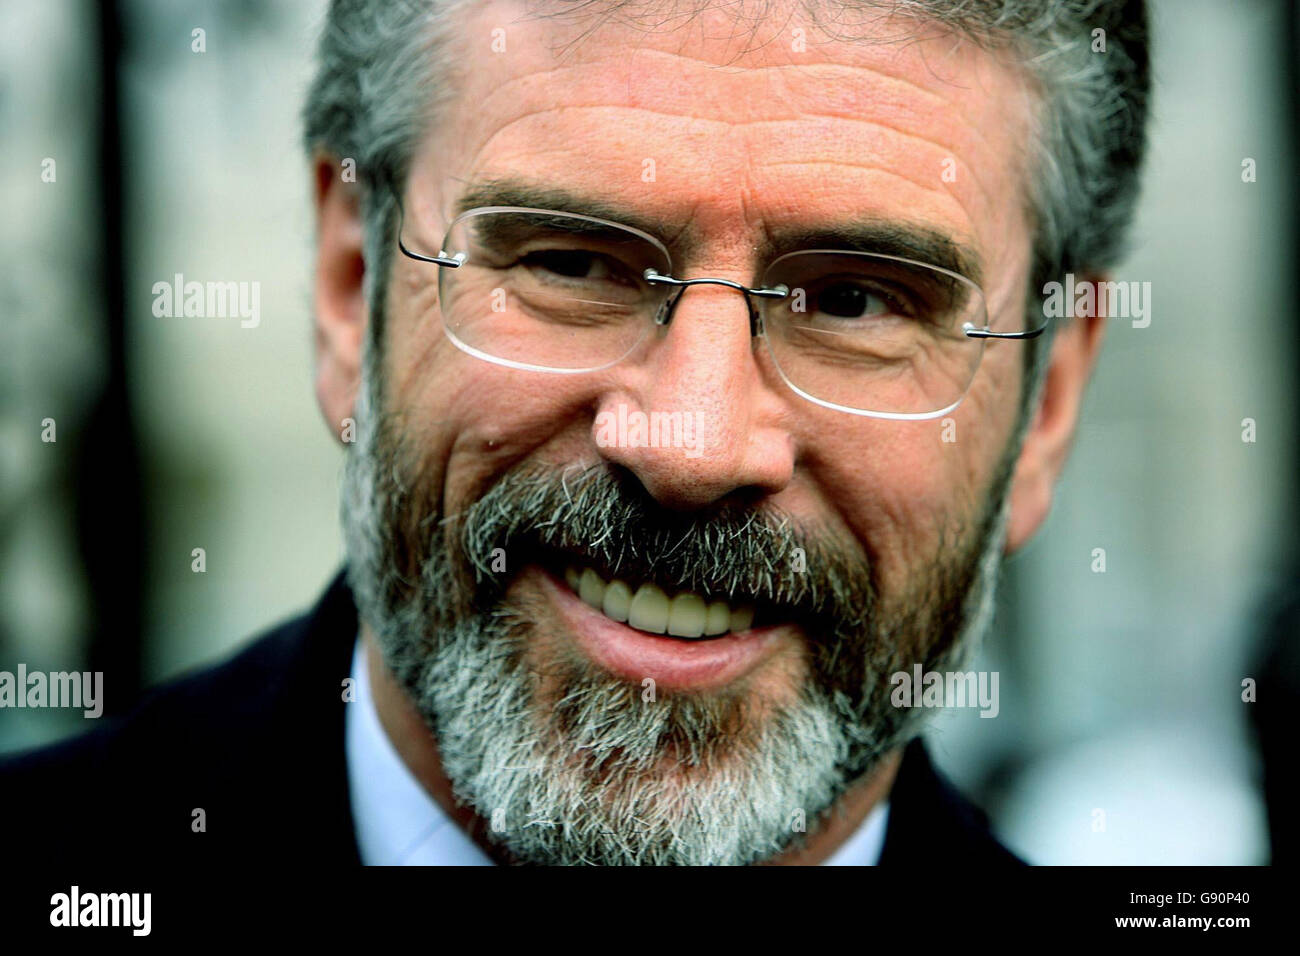 Sinn Fein Parteiführer Gerry Adams spricht mit den Medien vor dem Leinster House in Dublin, Mittwoch, 2. November 2005. Seine Partei hat dem Dail einen Antrag vorgelegt, in dem alle Parteien aufgerufen werden, die irische Einheit zu unterstützen. Achten Sie auf PA Geschichte POLITIK Wiedervereinigung. DRÜCKEN Sie VERBANDSFOTO. Bildnachweis sollte lauten: Julien Behal/PA. Stockfoto